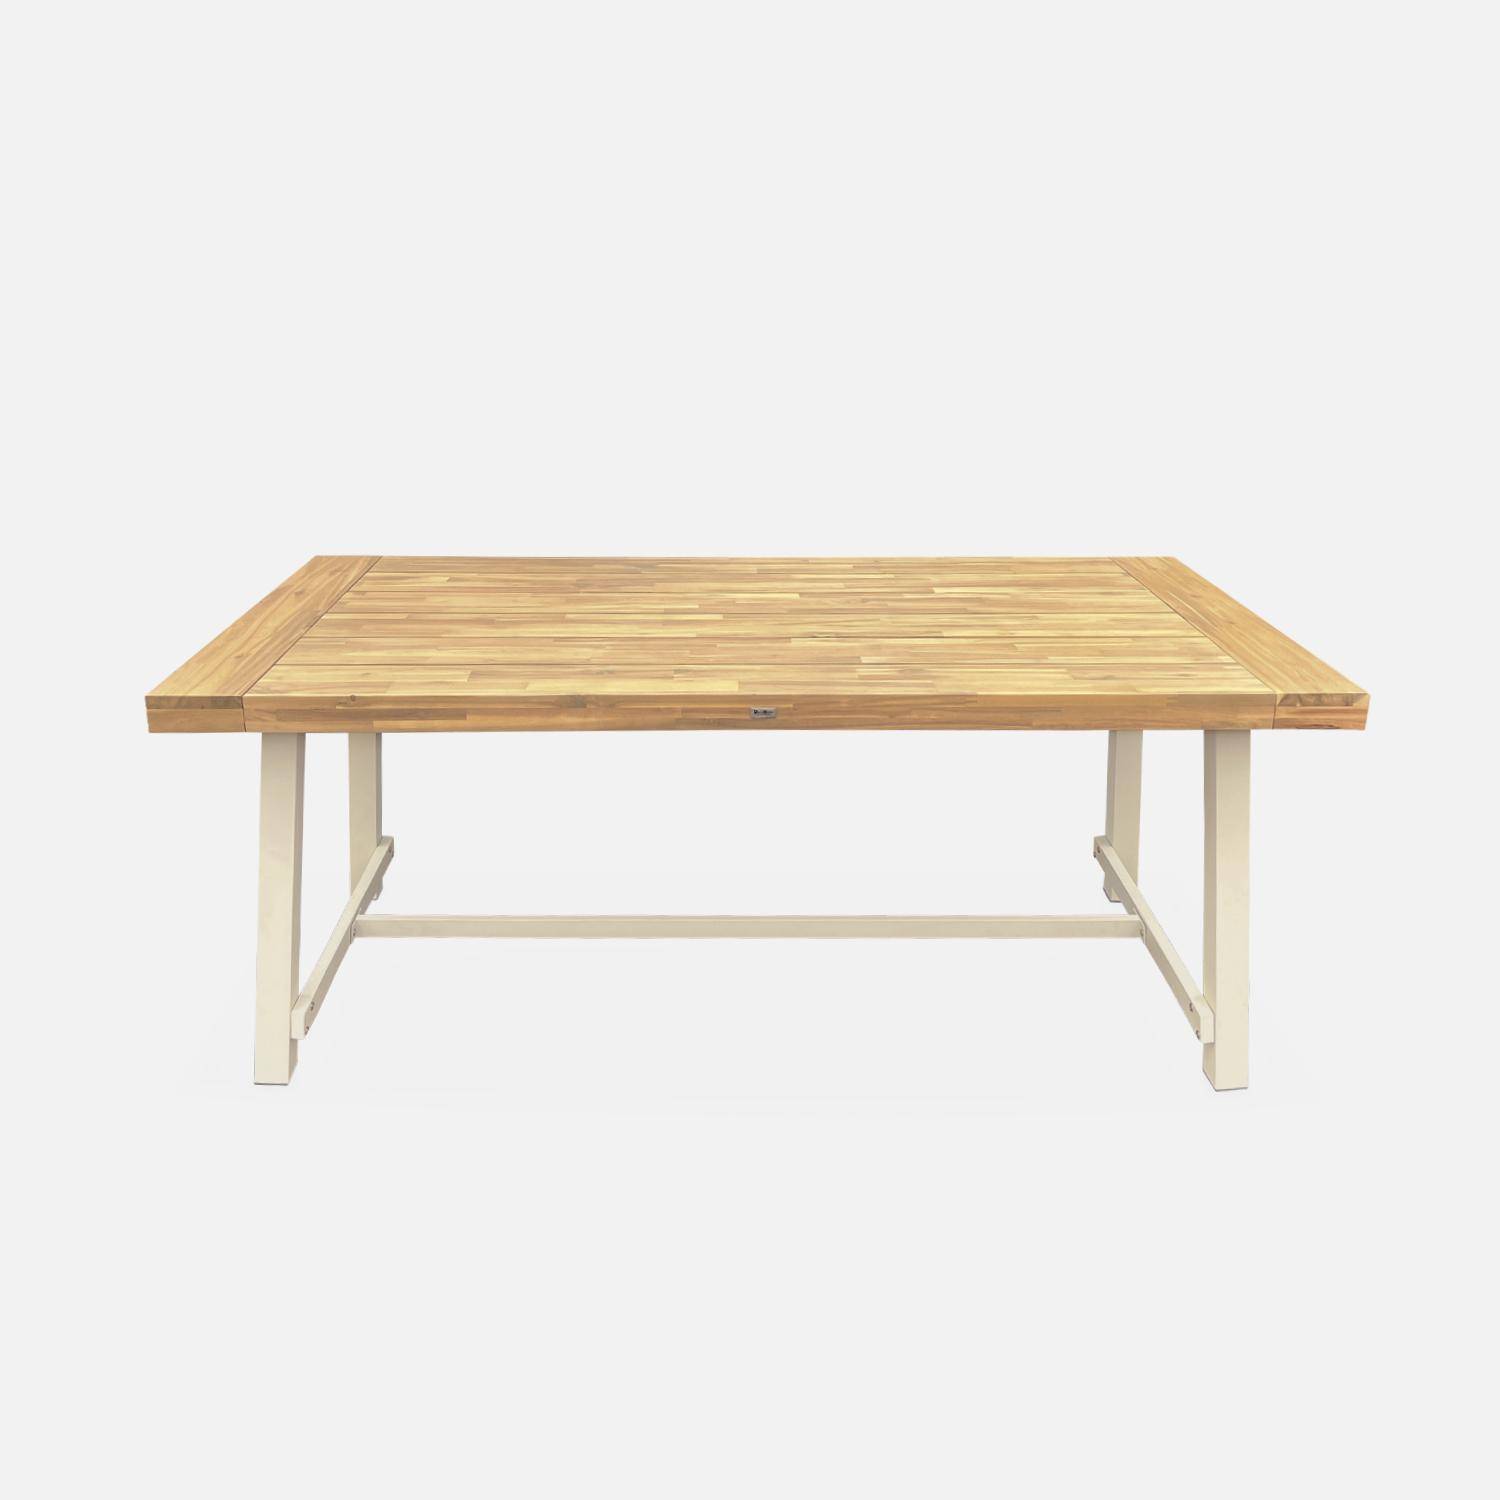 Table intérieur/extérieur en bois clair, effet teck et acier galvanisé ivoire, Fortaleza L190 x P91.5 x H76cm 6-8 places,sweeek,Photo4